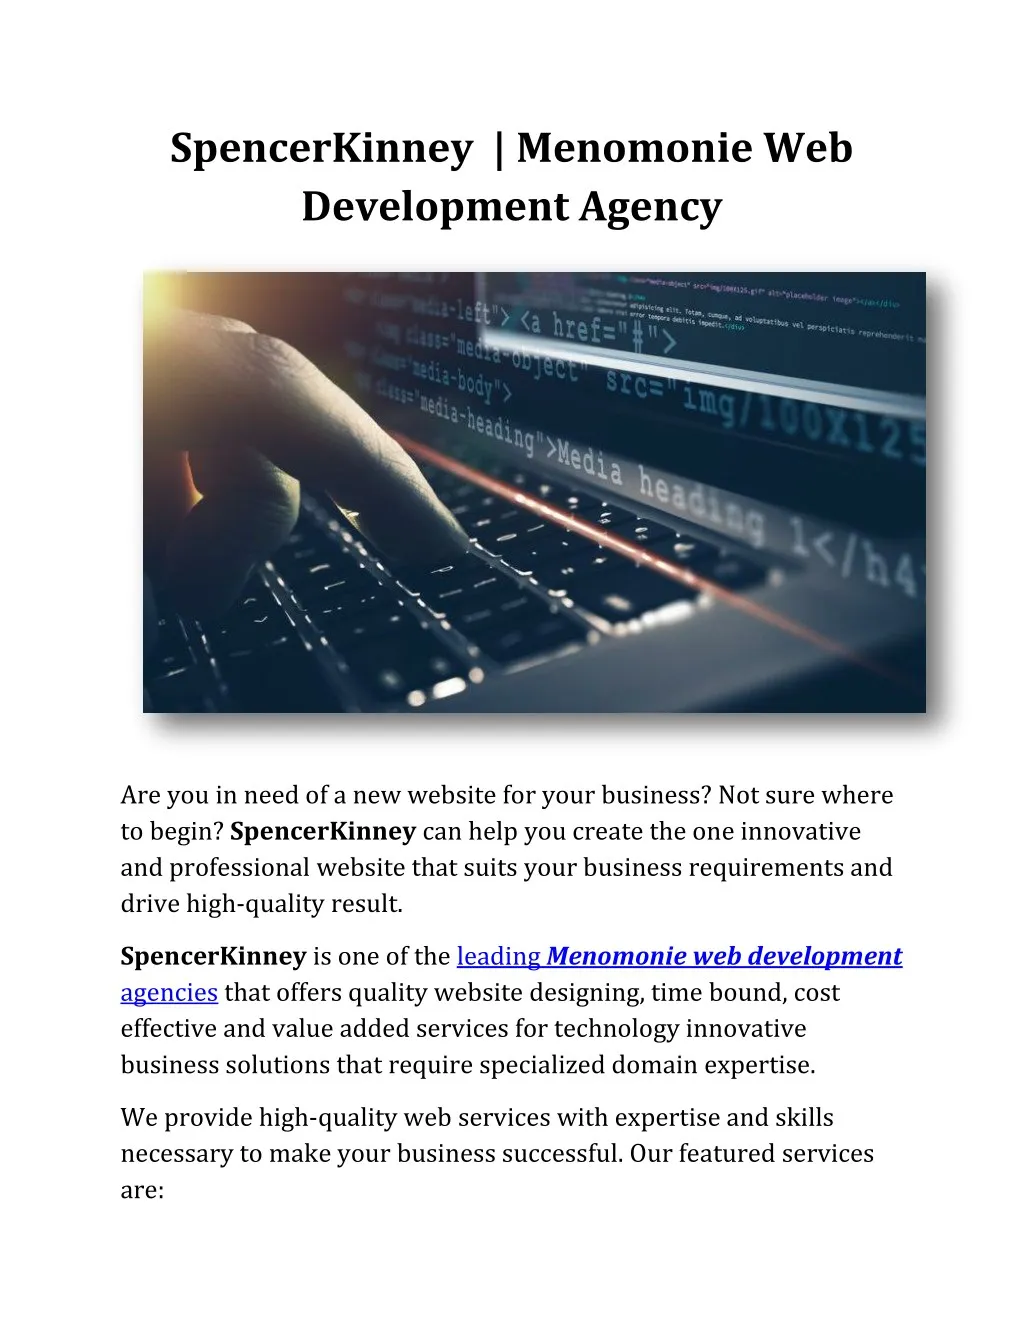 spencerkinney menomonie web development agency n.